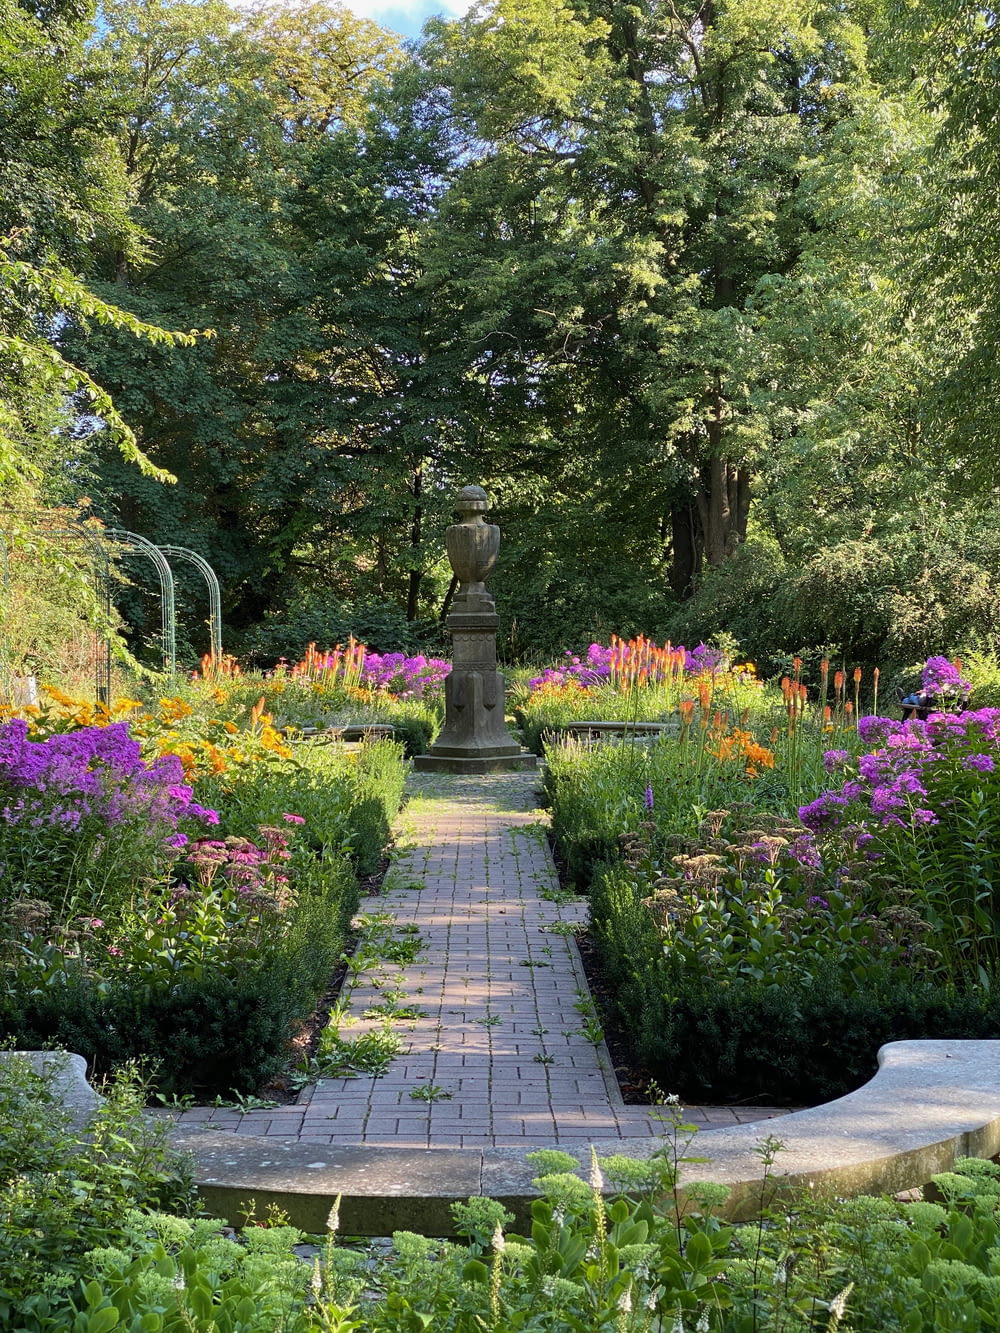 a stone pathway through a garden